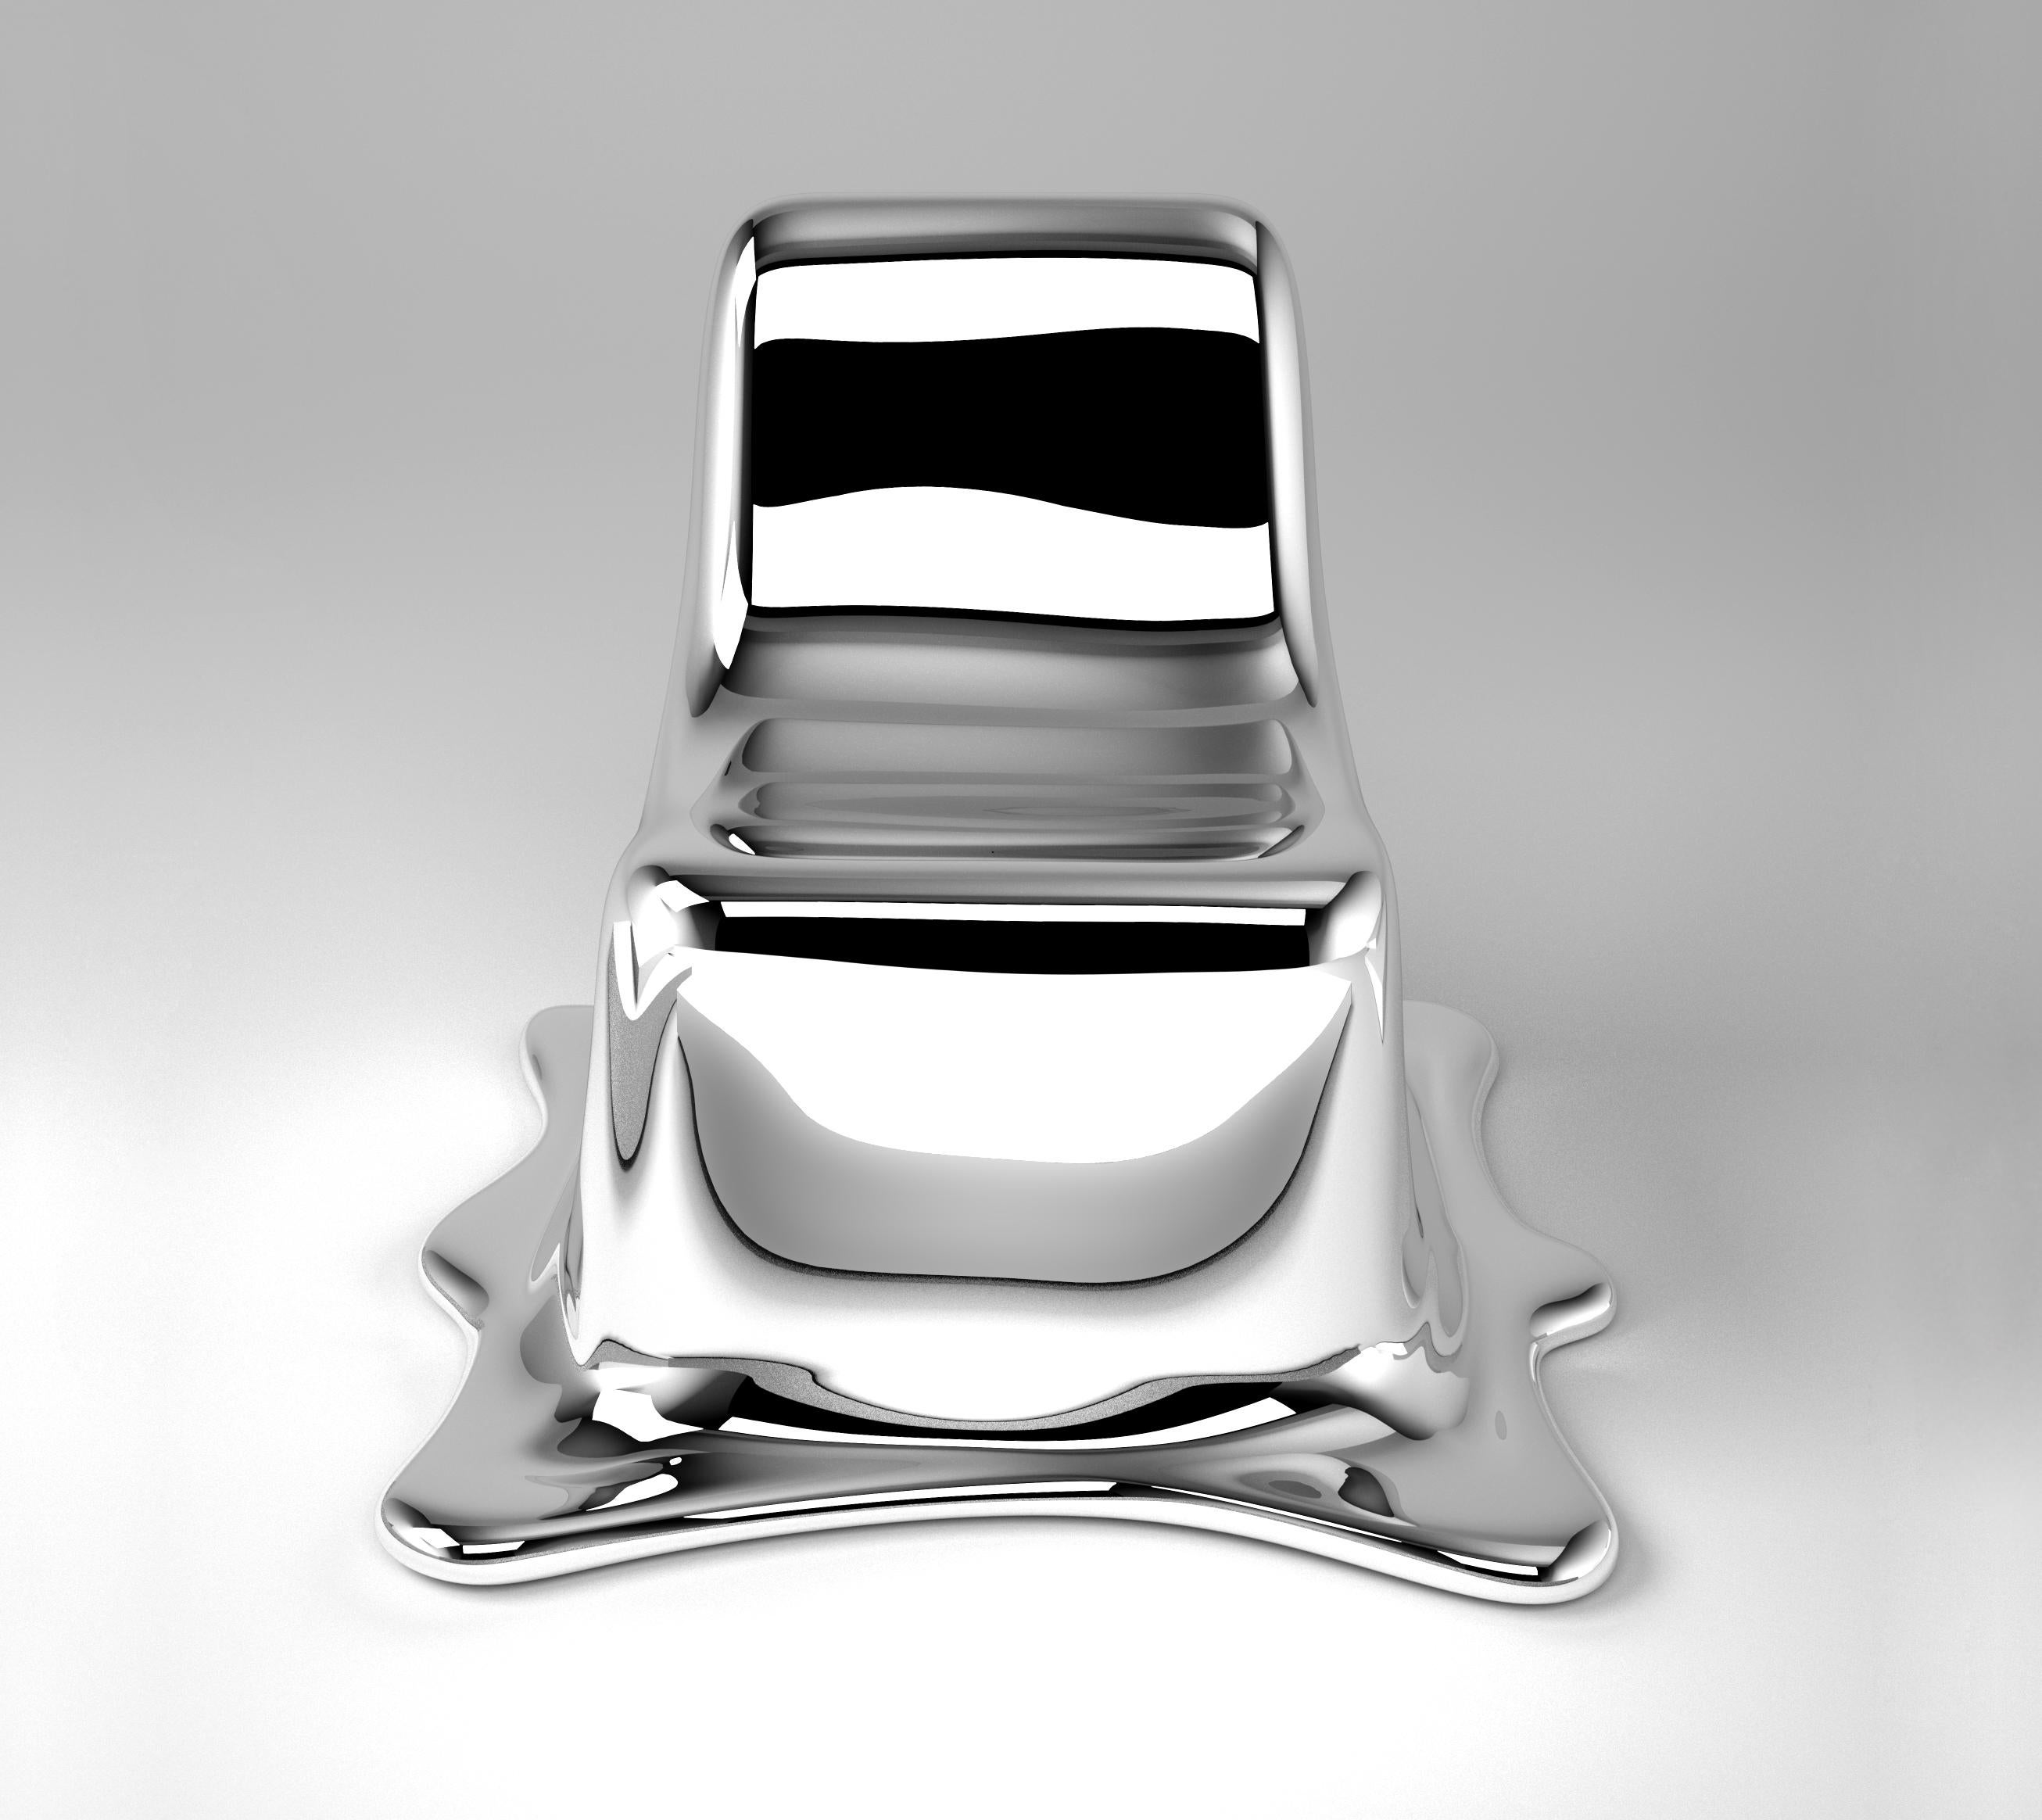 Schmelzender stuhl by Philipp Aduatz
2011
Auflage von 12 + 3 A/P
Abmessungen: 95 x 93 x 78 cm
MATERIALIEN: Glasfaserverstärktes Polymer mit einer speziellen Silberbeschichtung

Neu seit 2012: schwarz verchromte Sonderedition von 12 + 3 A/P

Philipp